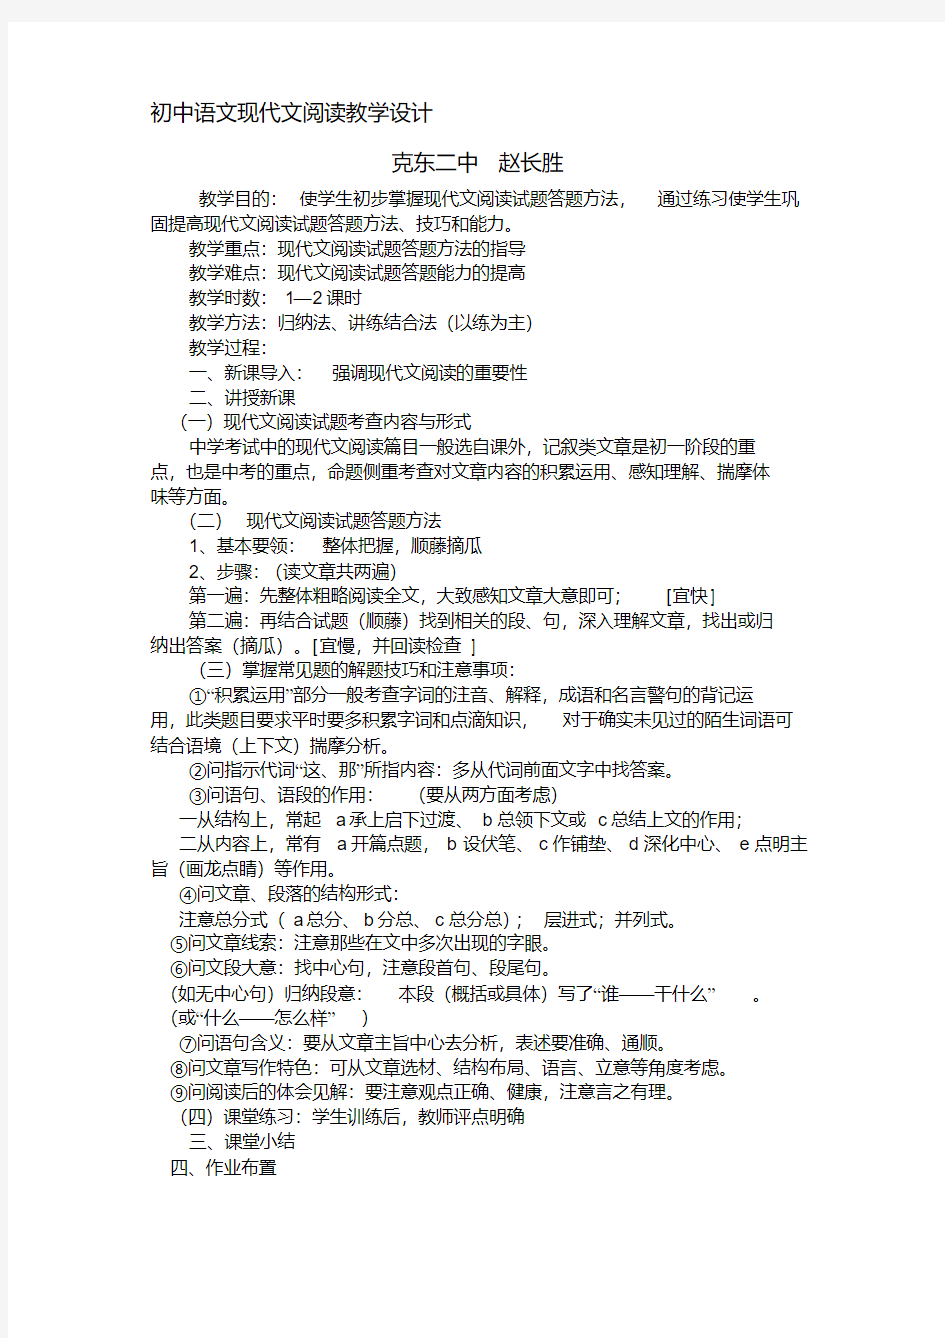 初中语文现代文阅读教学设计(20200522181342)